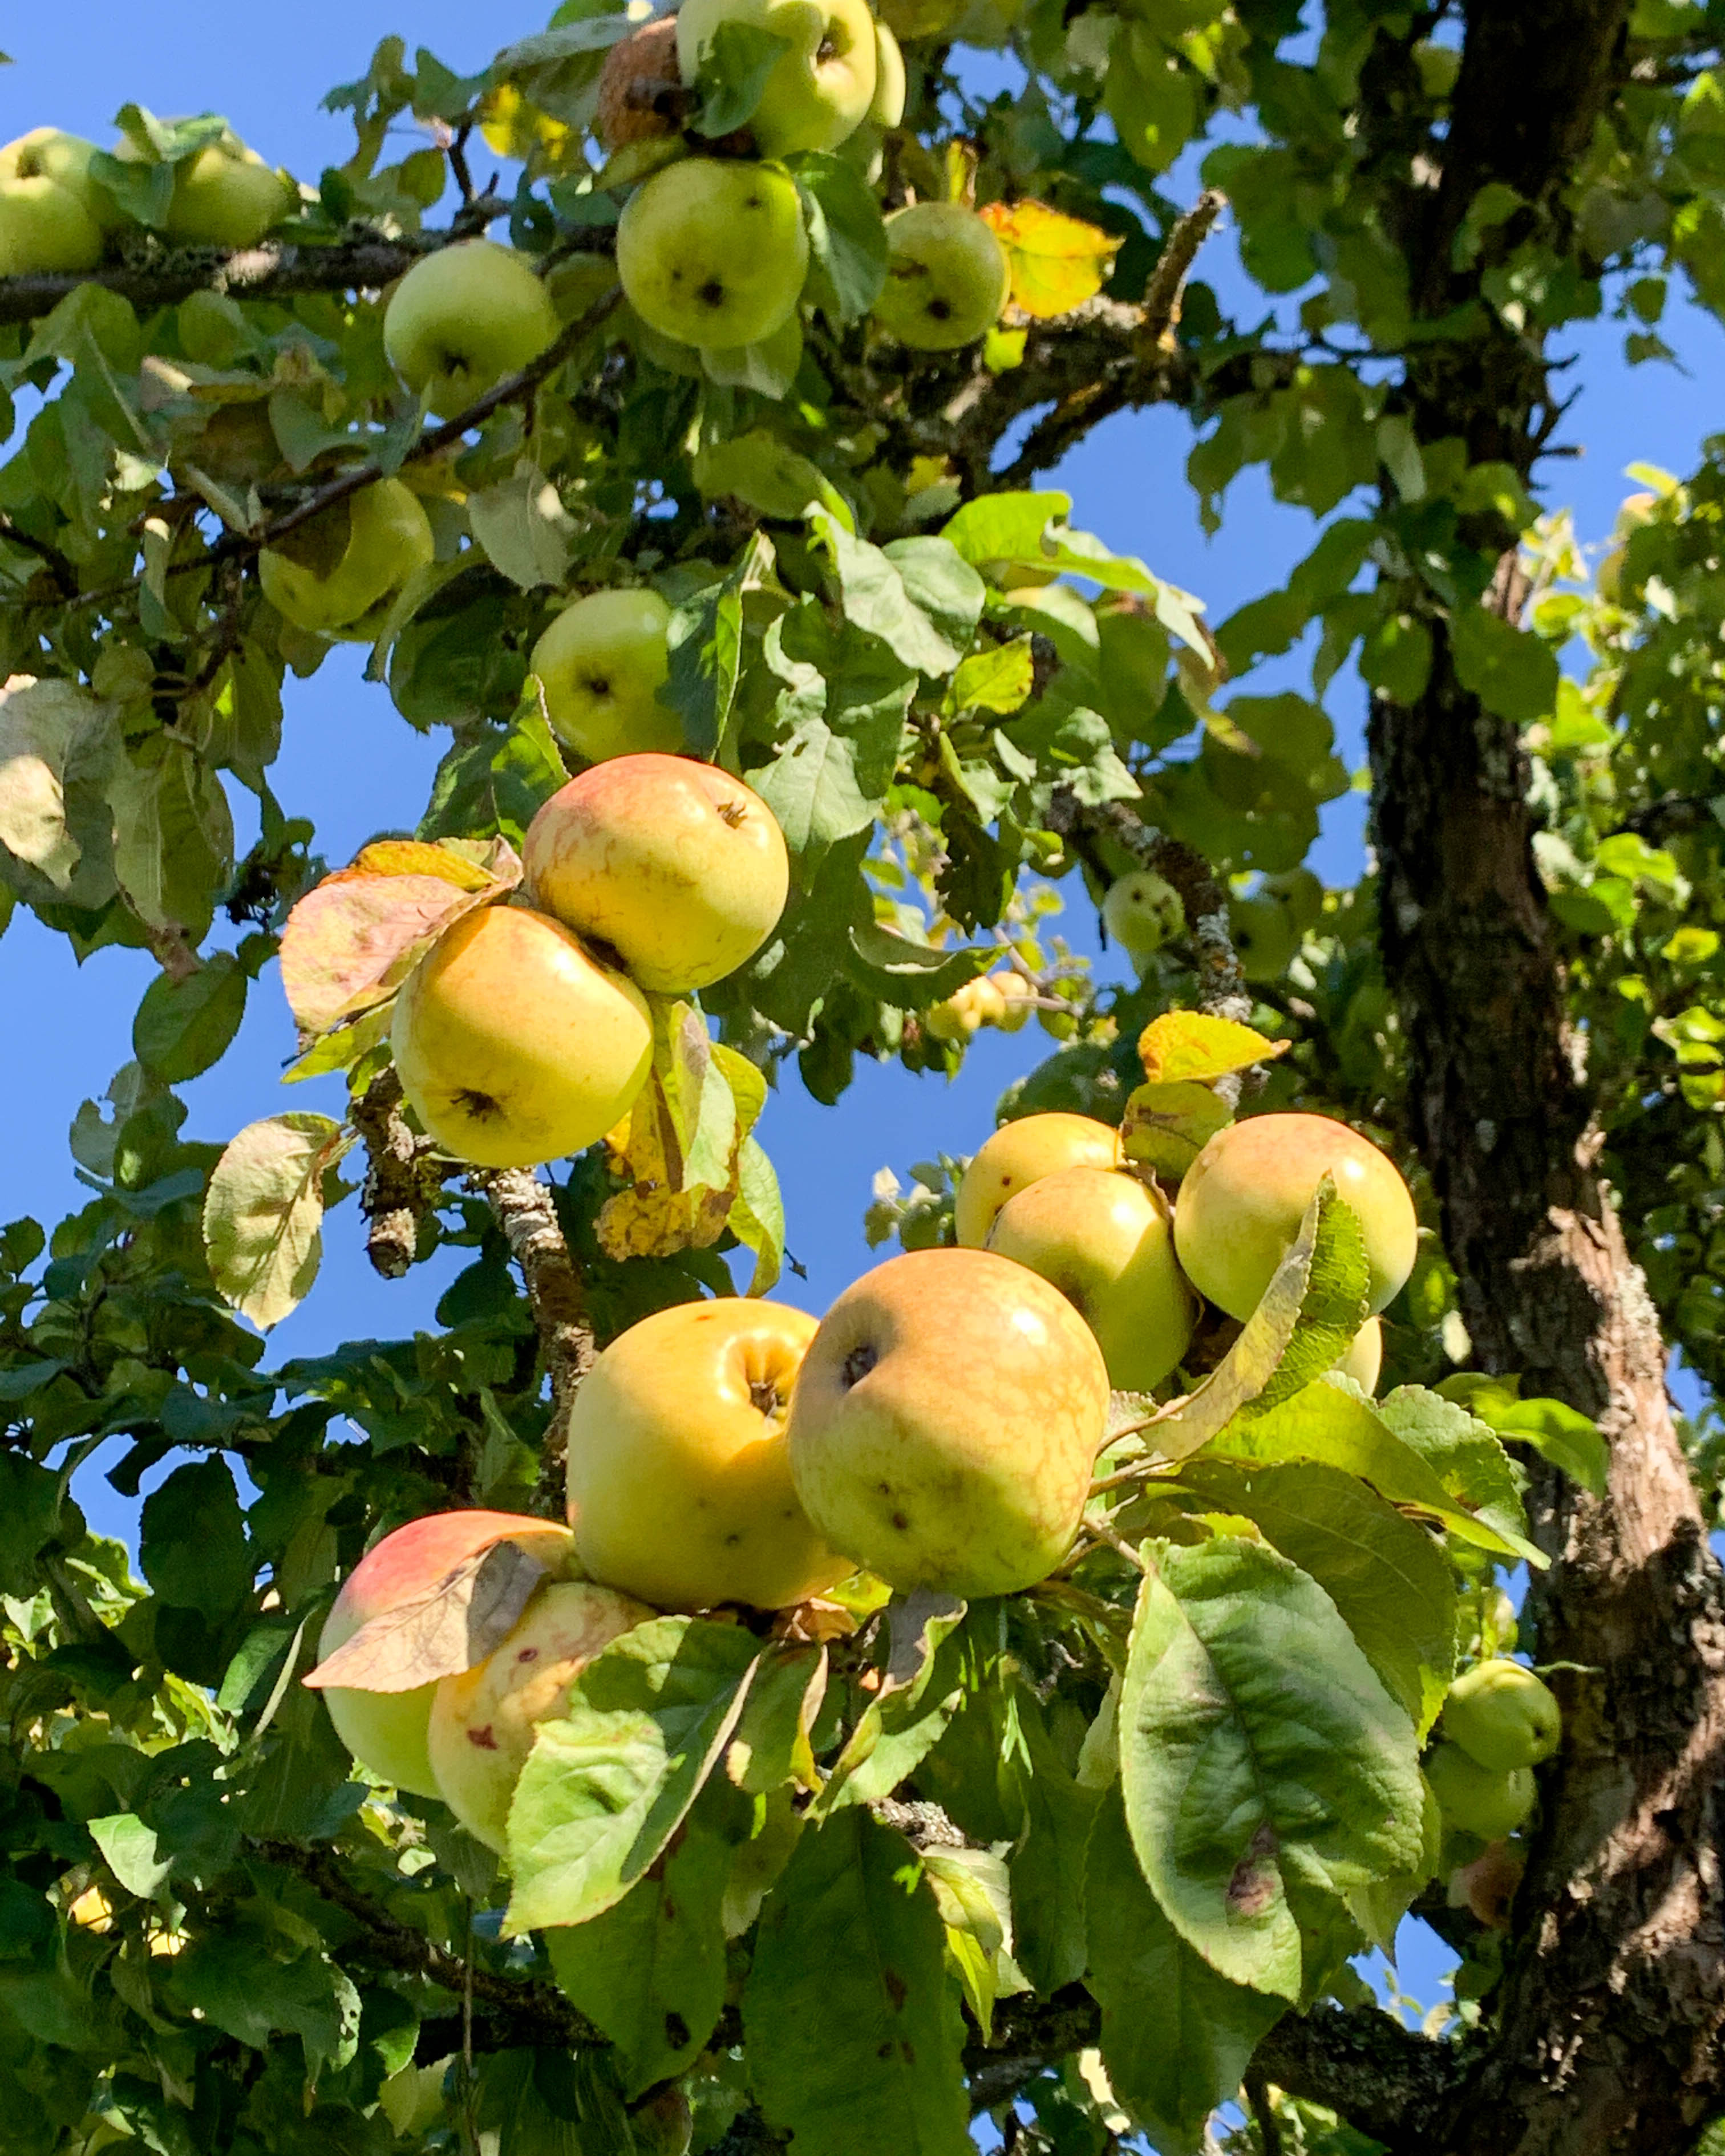 Omenamehun puristaminen on satokauden loppuhuipennus